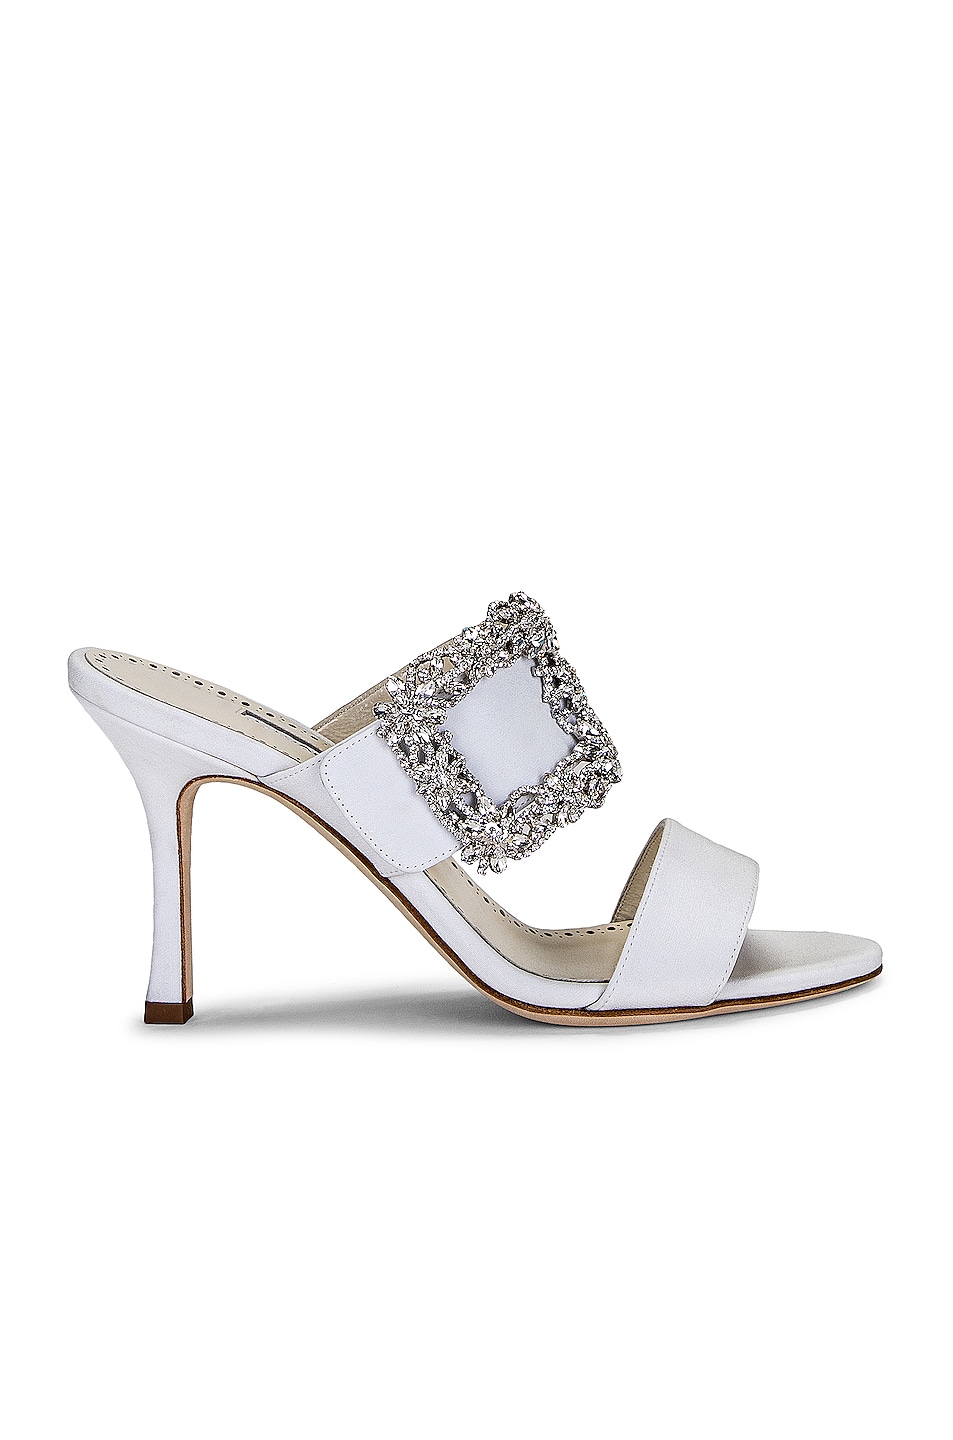 Manolo Blahnik Gable Jewel 90 Sandal in Cream | FWRD